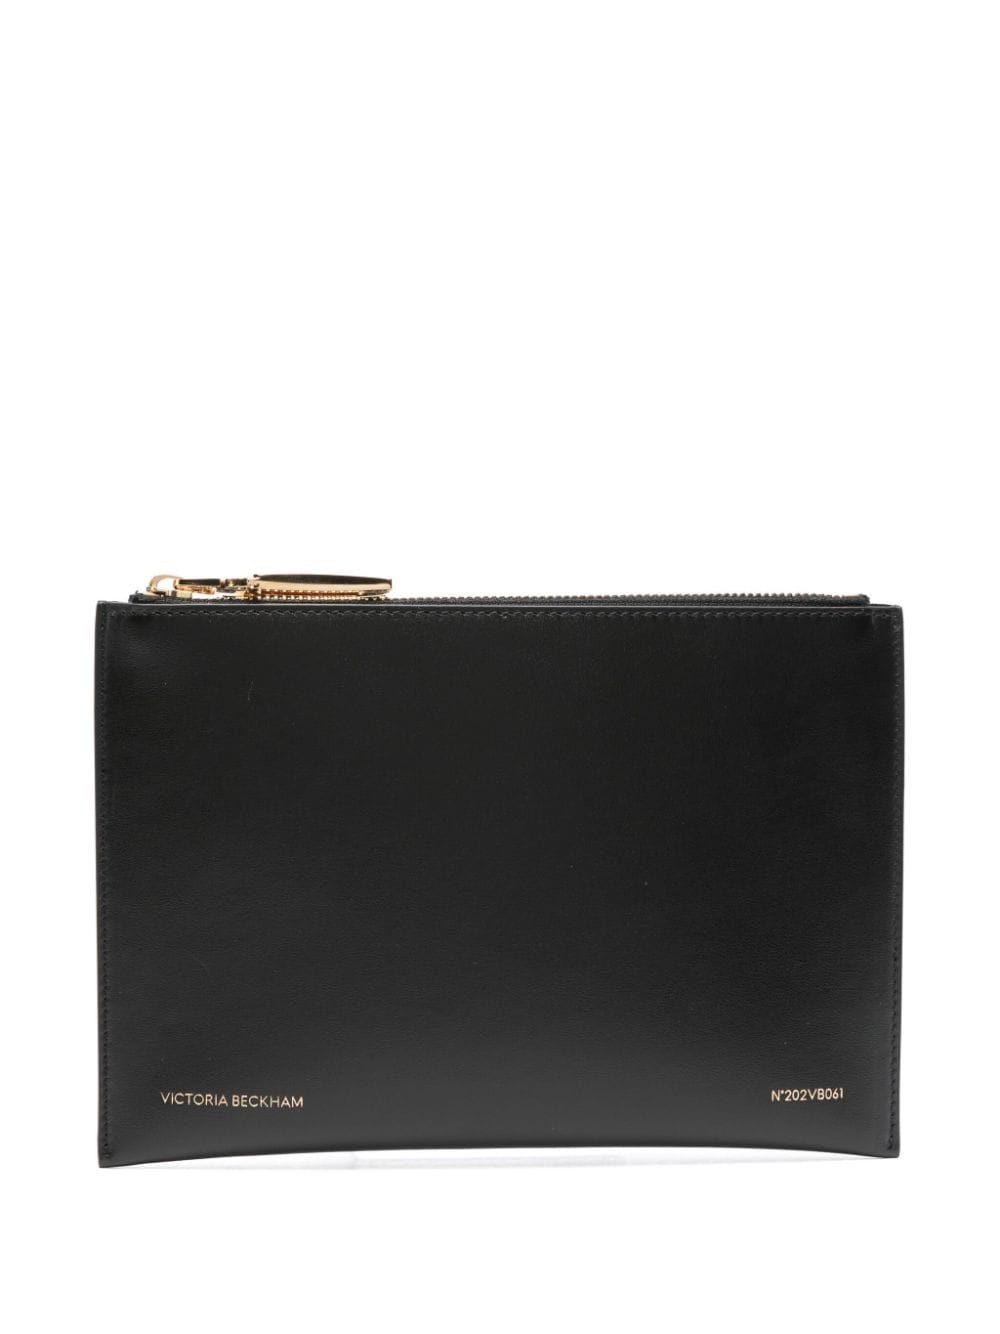 Victoria Beckham B Frame leather clutch bag - Black von Victoria Beckham